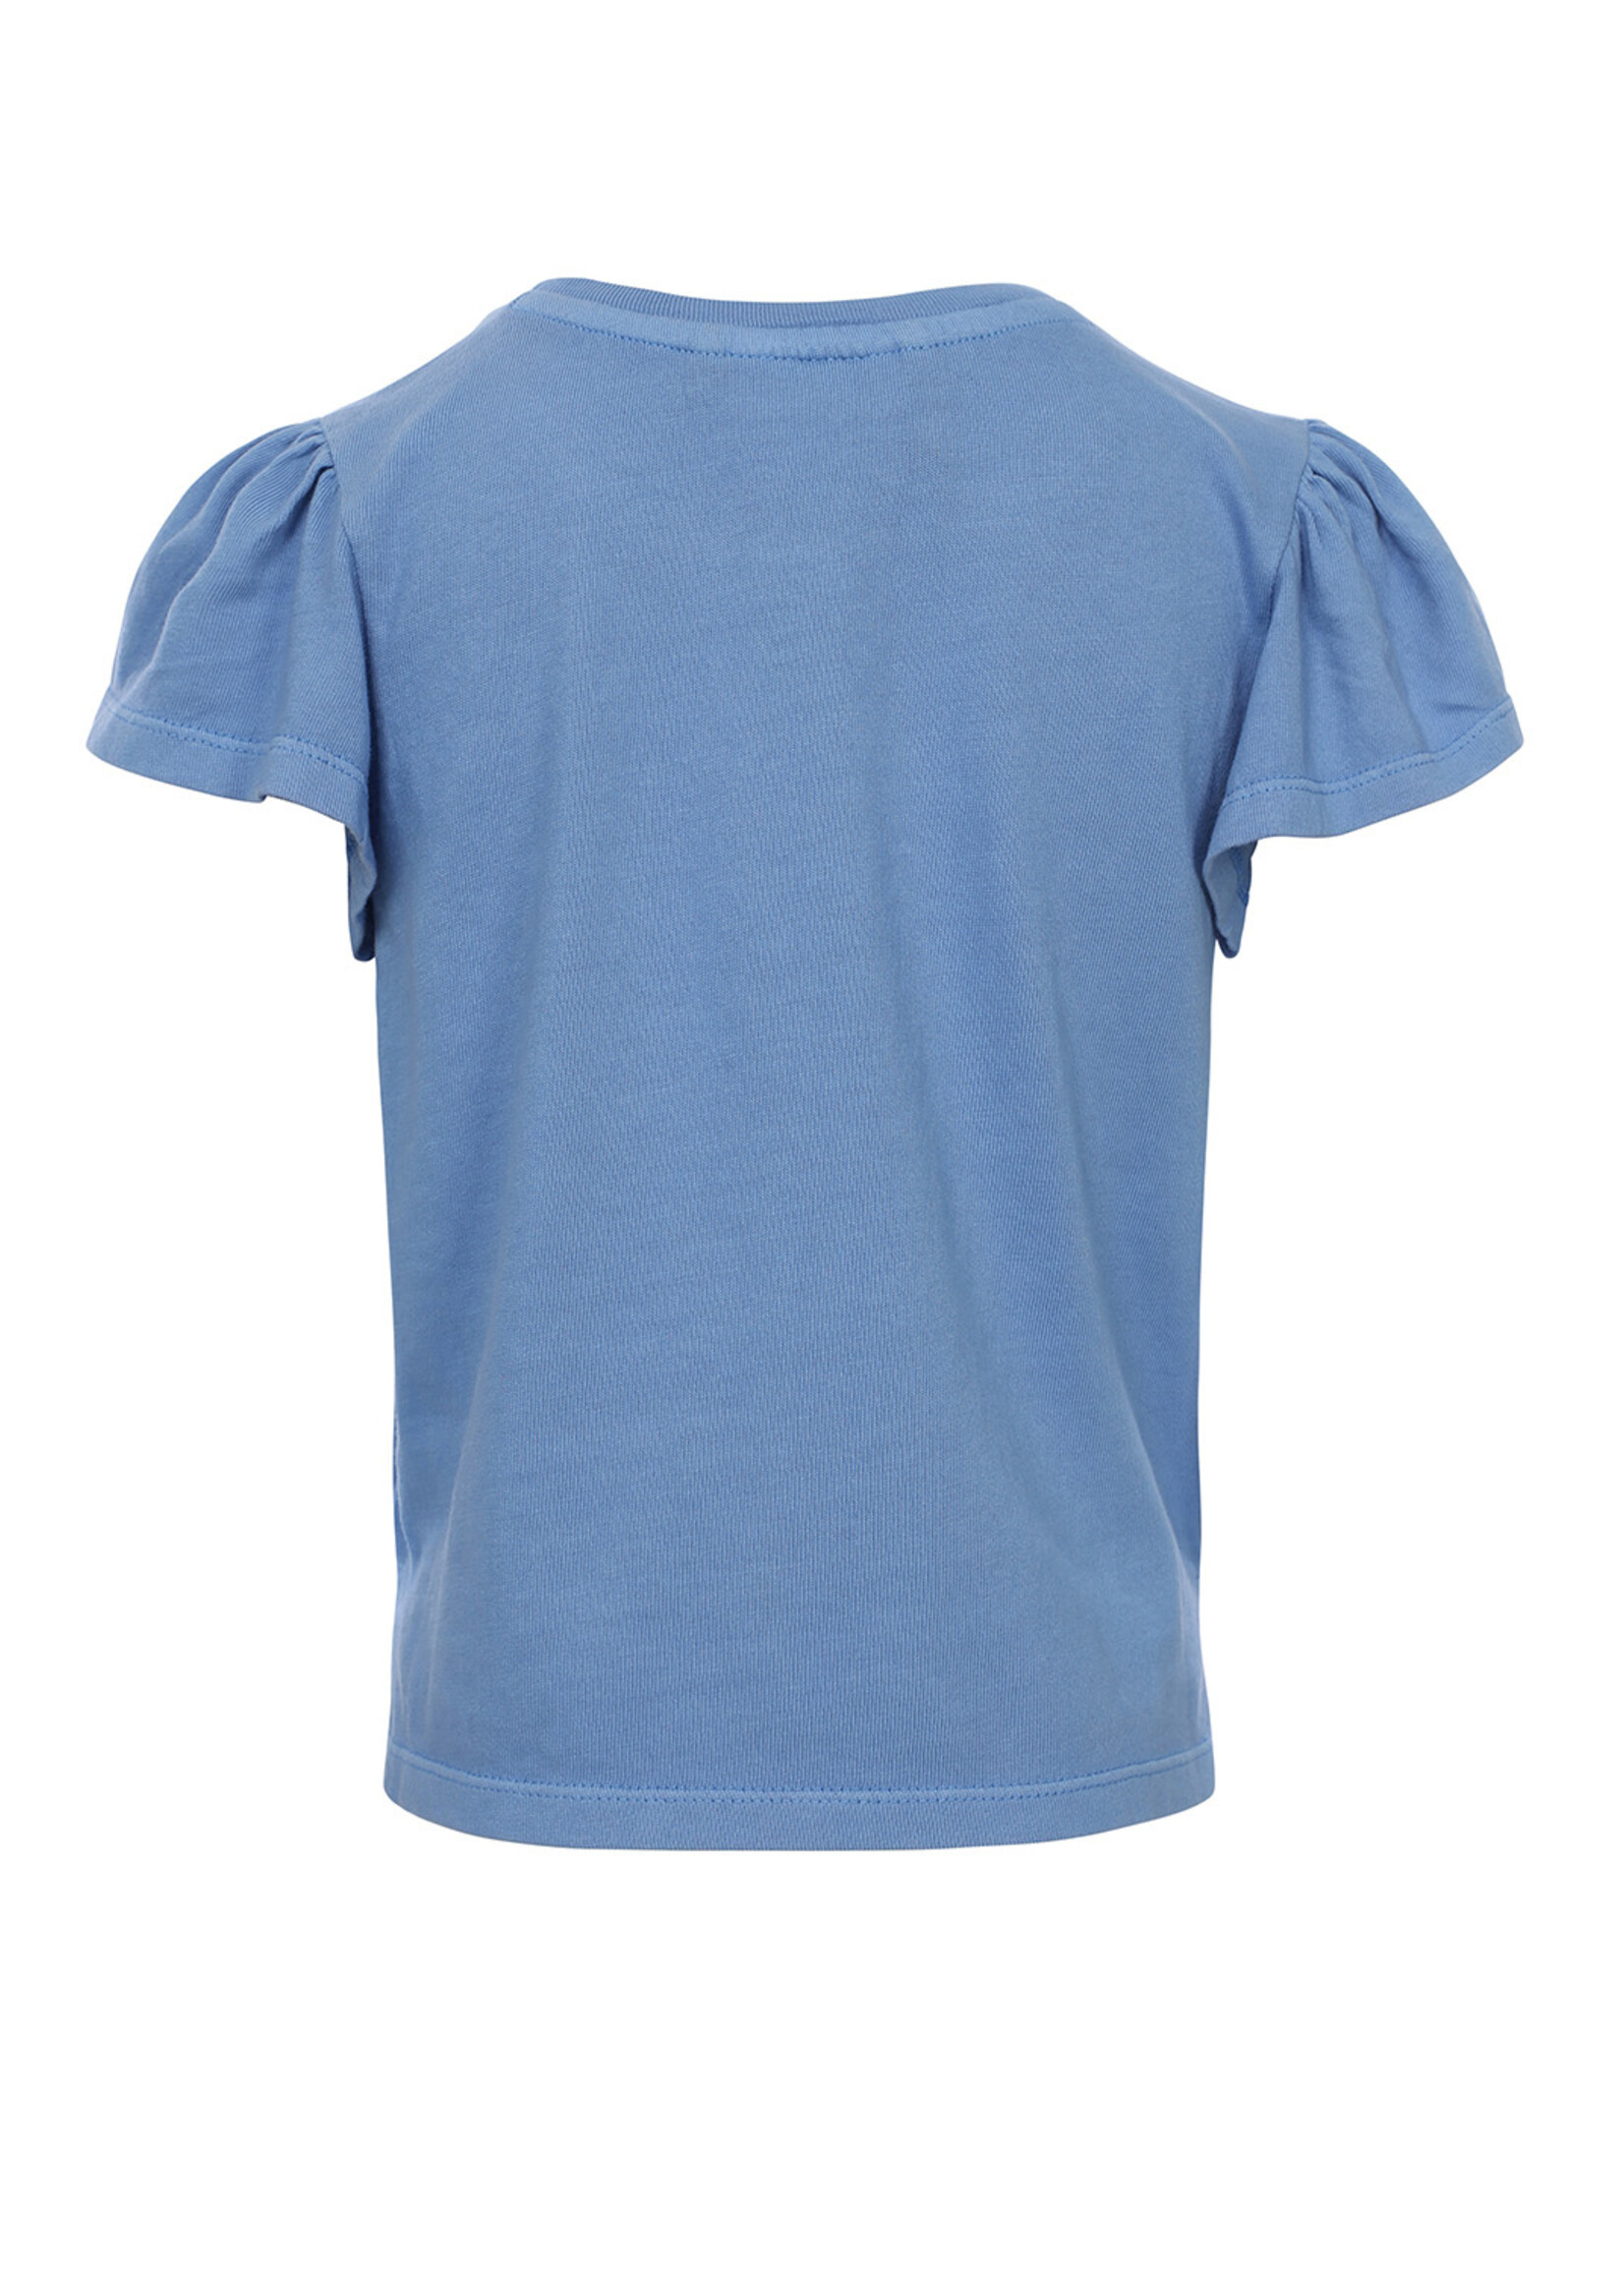 LOOXS 10sixteen 10Sixteen T-shirt sky blue